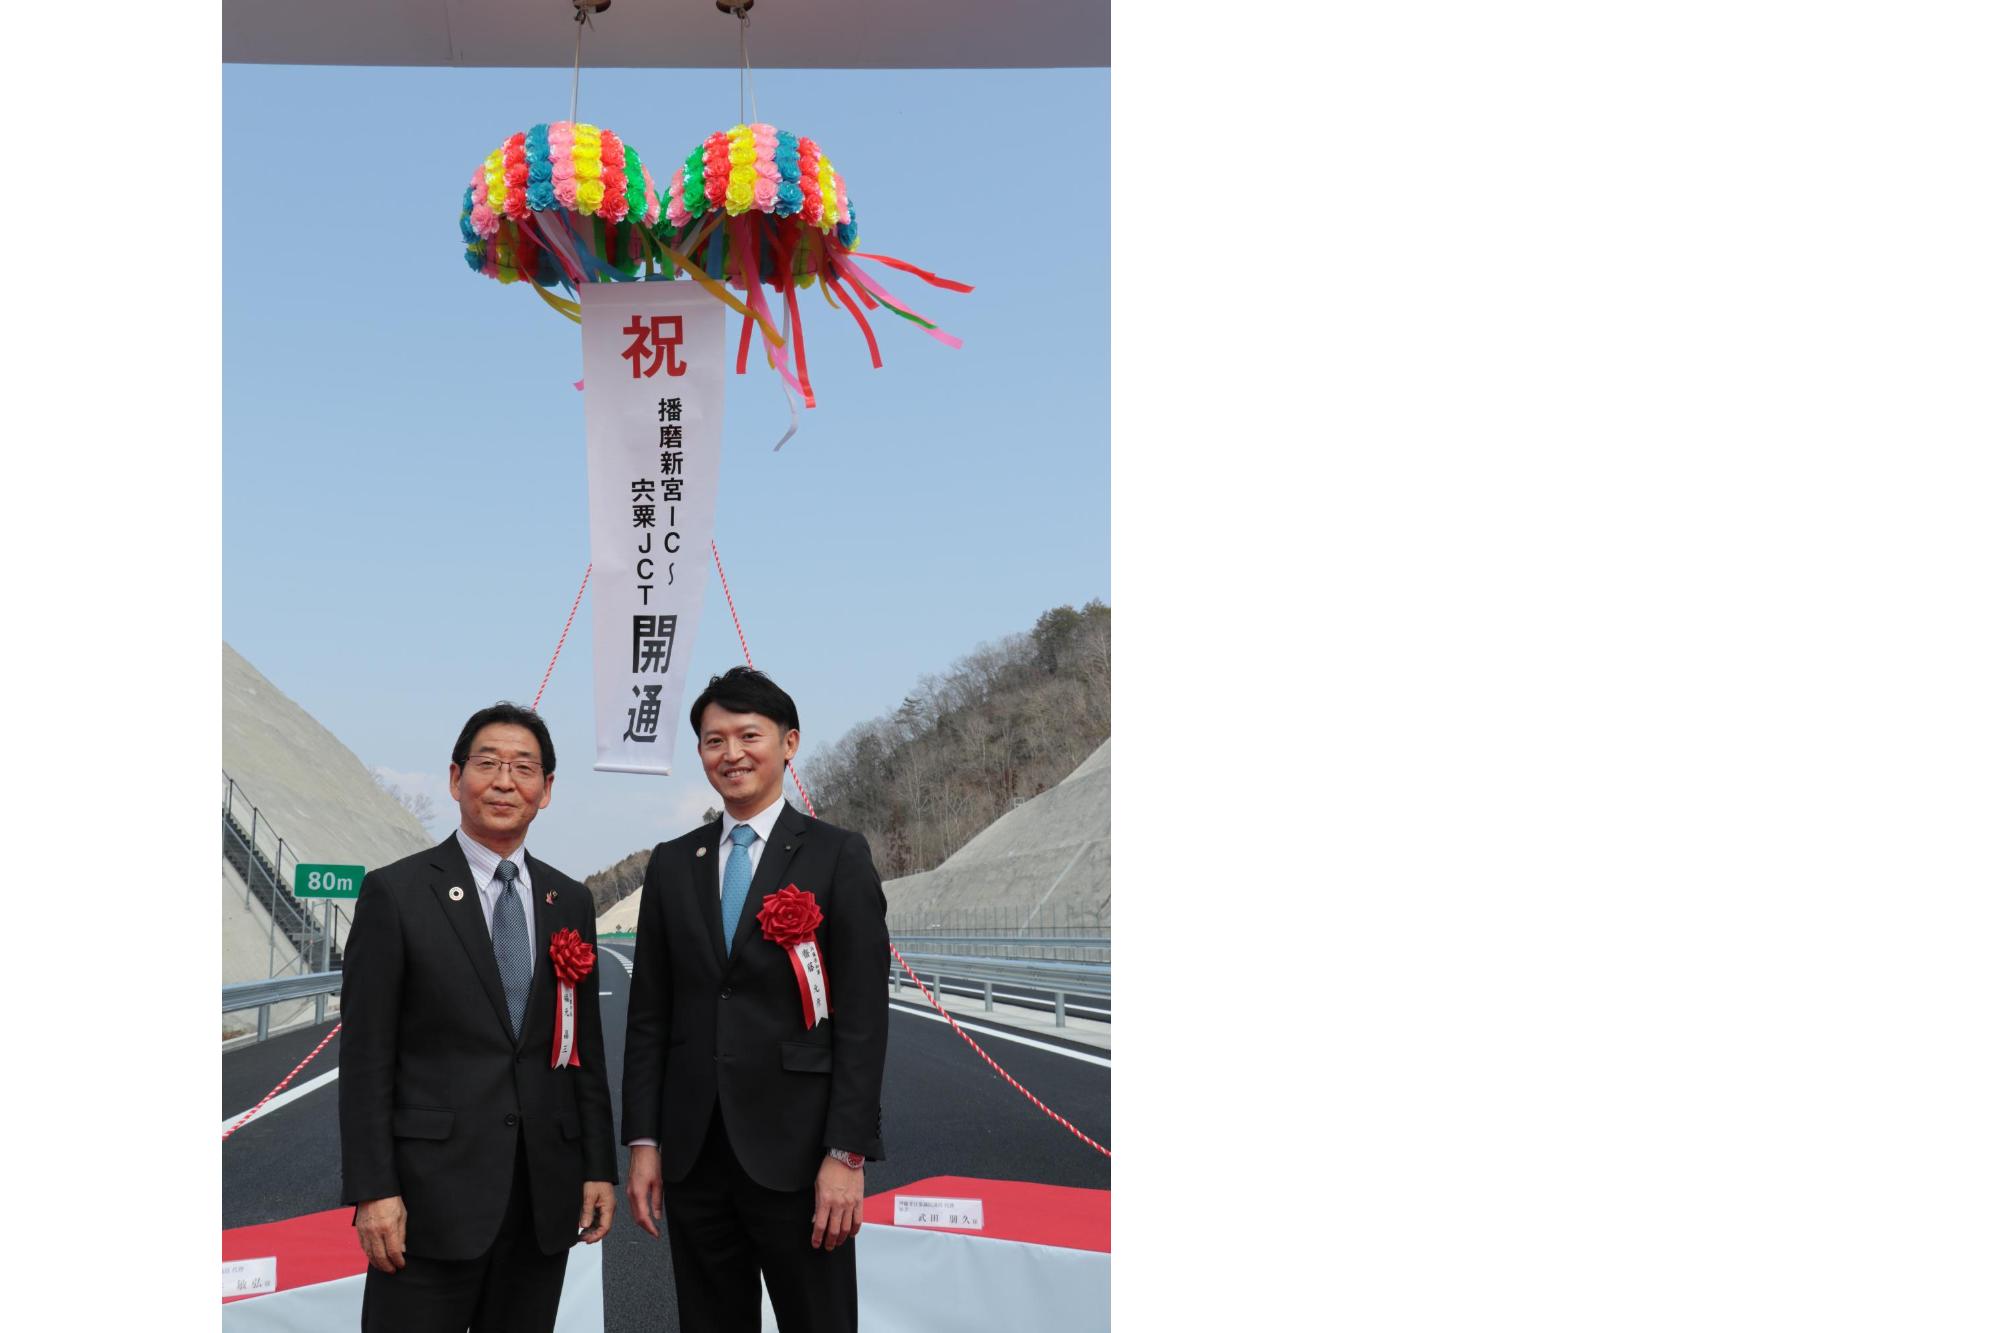 播磨自動車道開通式典にて、左は福元市長、右は齋藤兵庫県知事が並んでいる写真